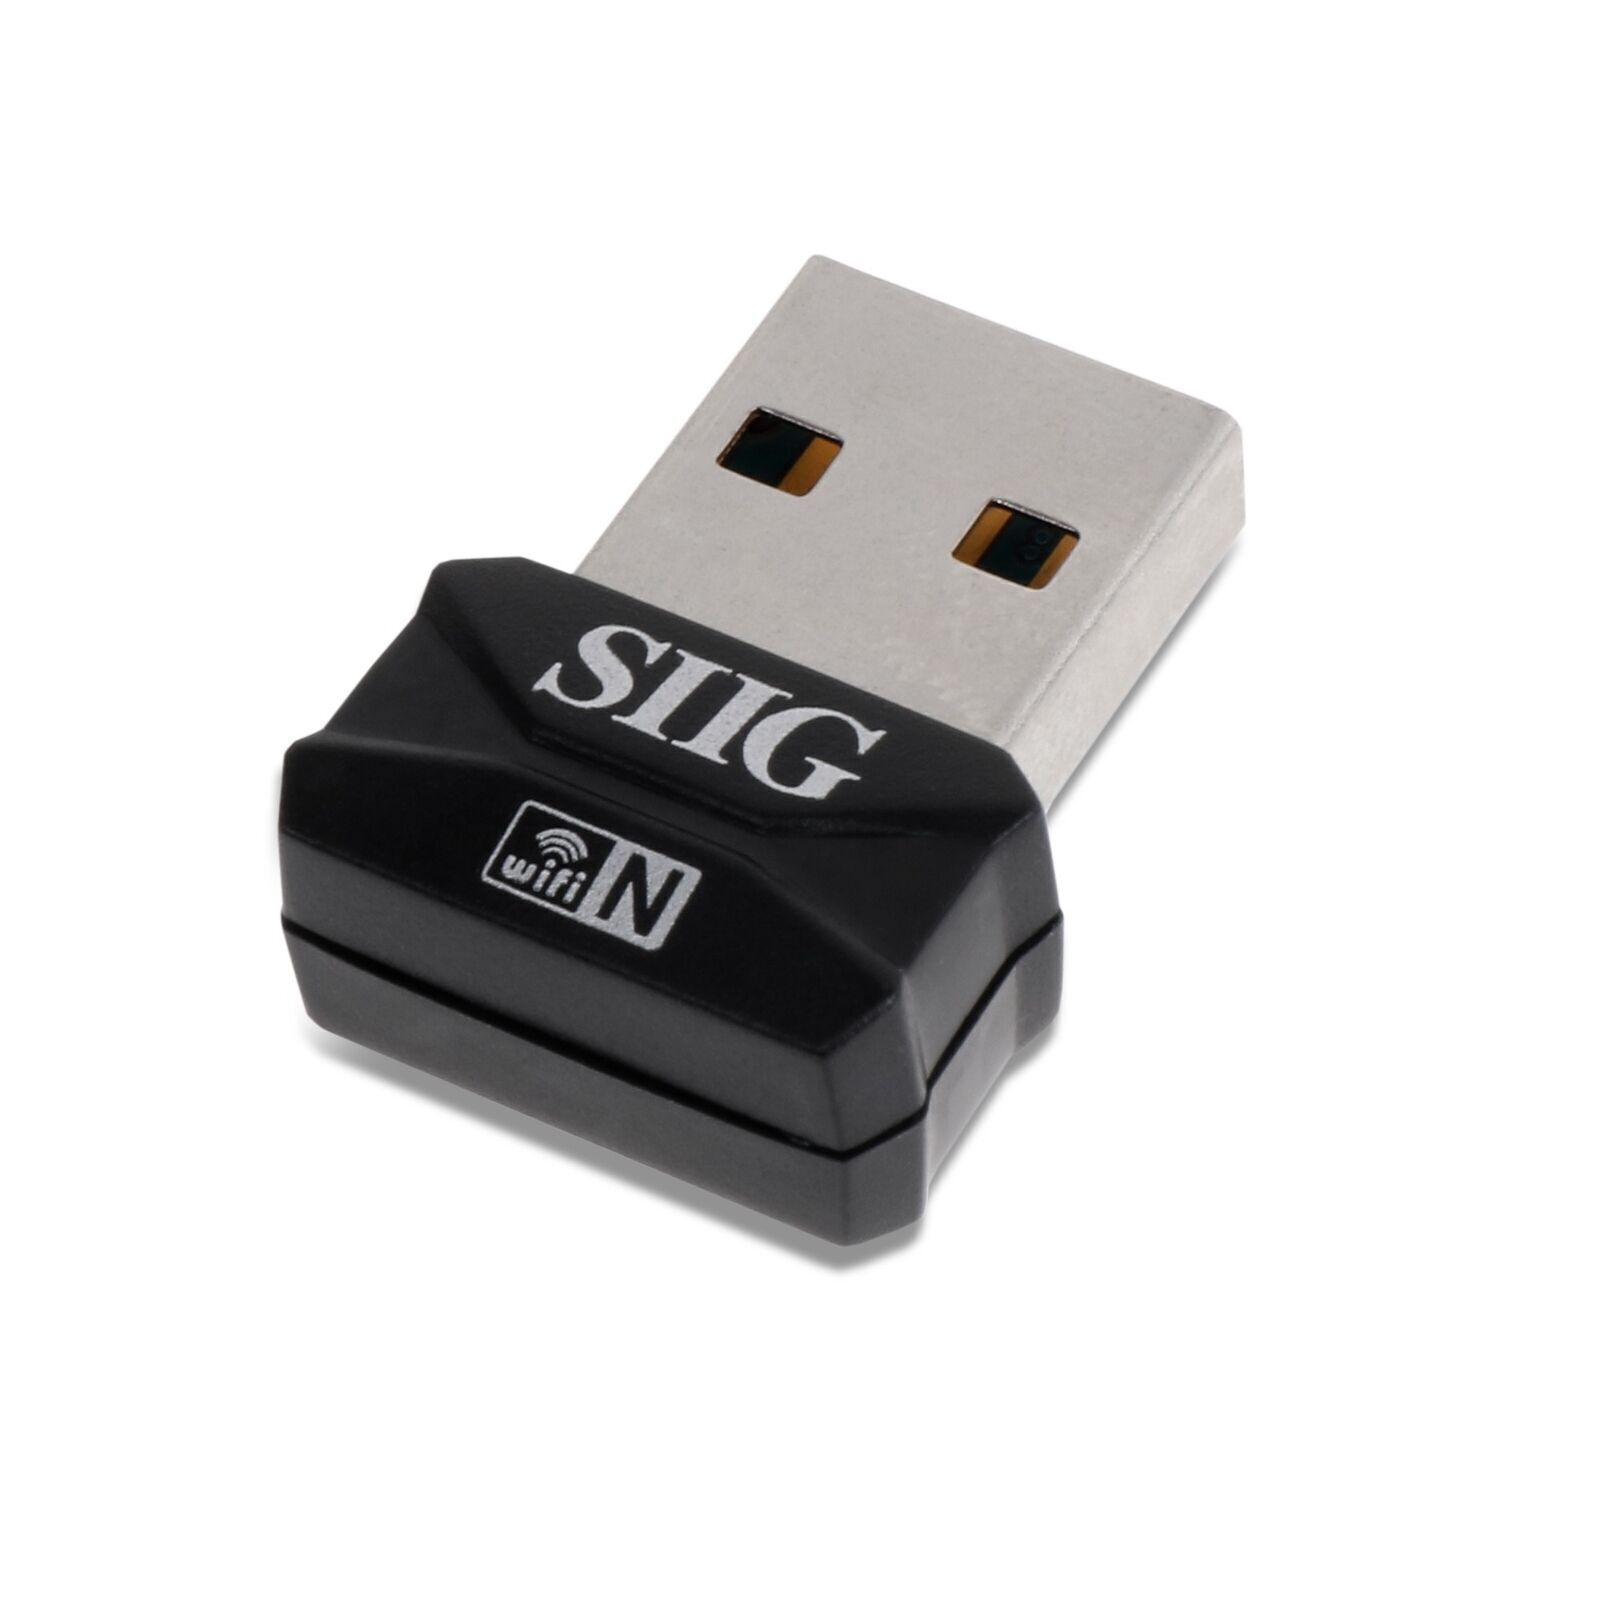 SIIG JU-WR0112-S2 Wireless-N Mini USB Wi-Fi Adapter 150Mbps 802.11n g b RTL